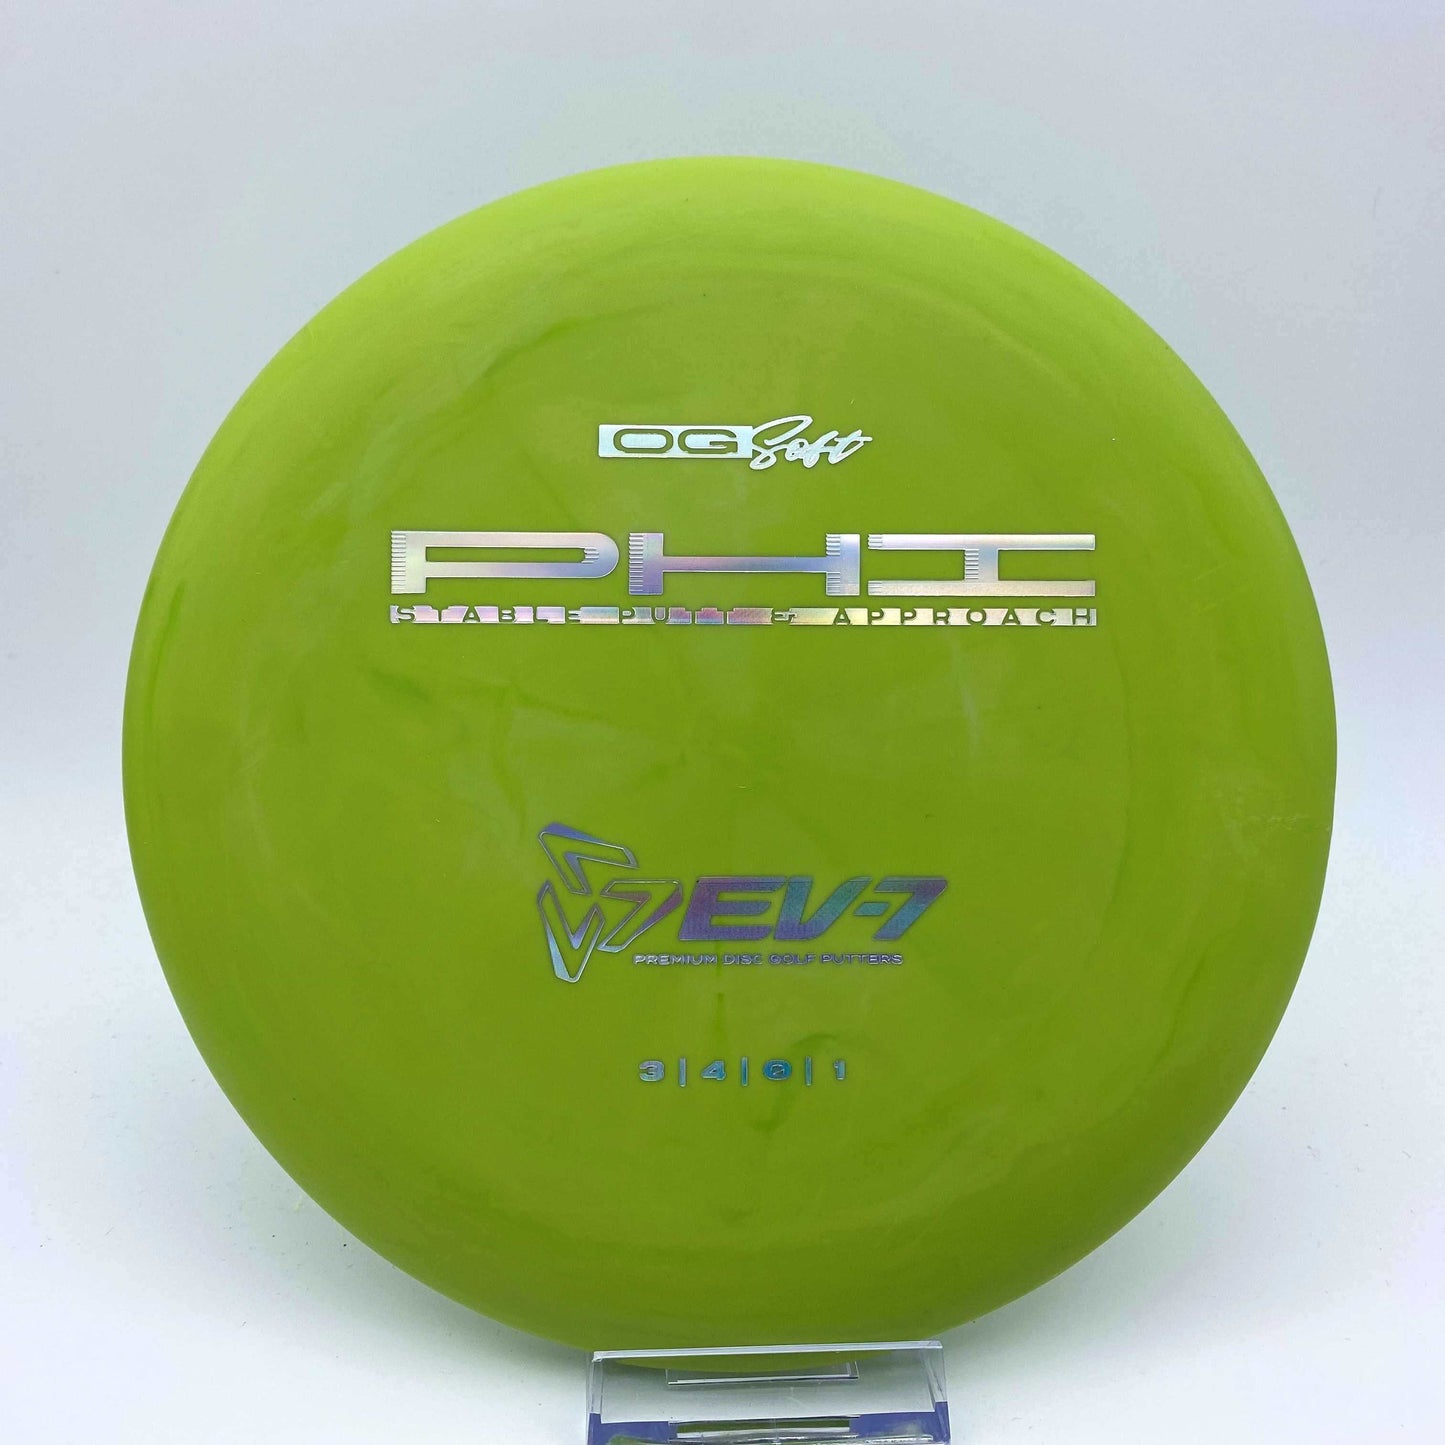 EV-7 Phi - Disc Golf Deals USA